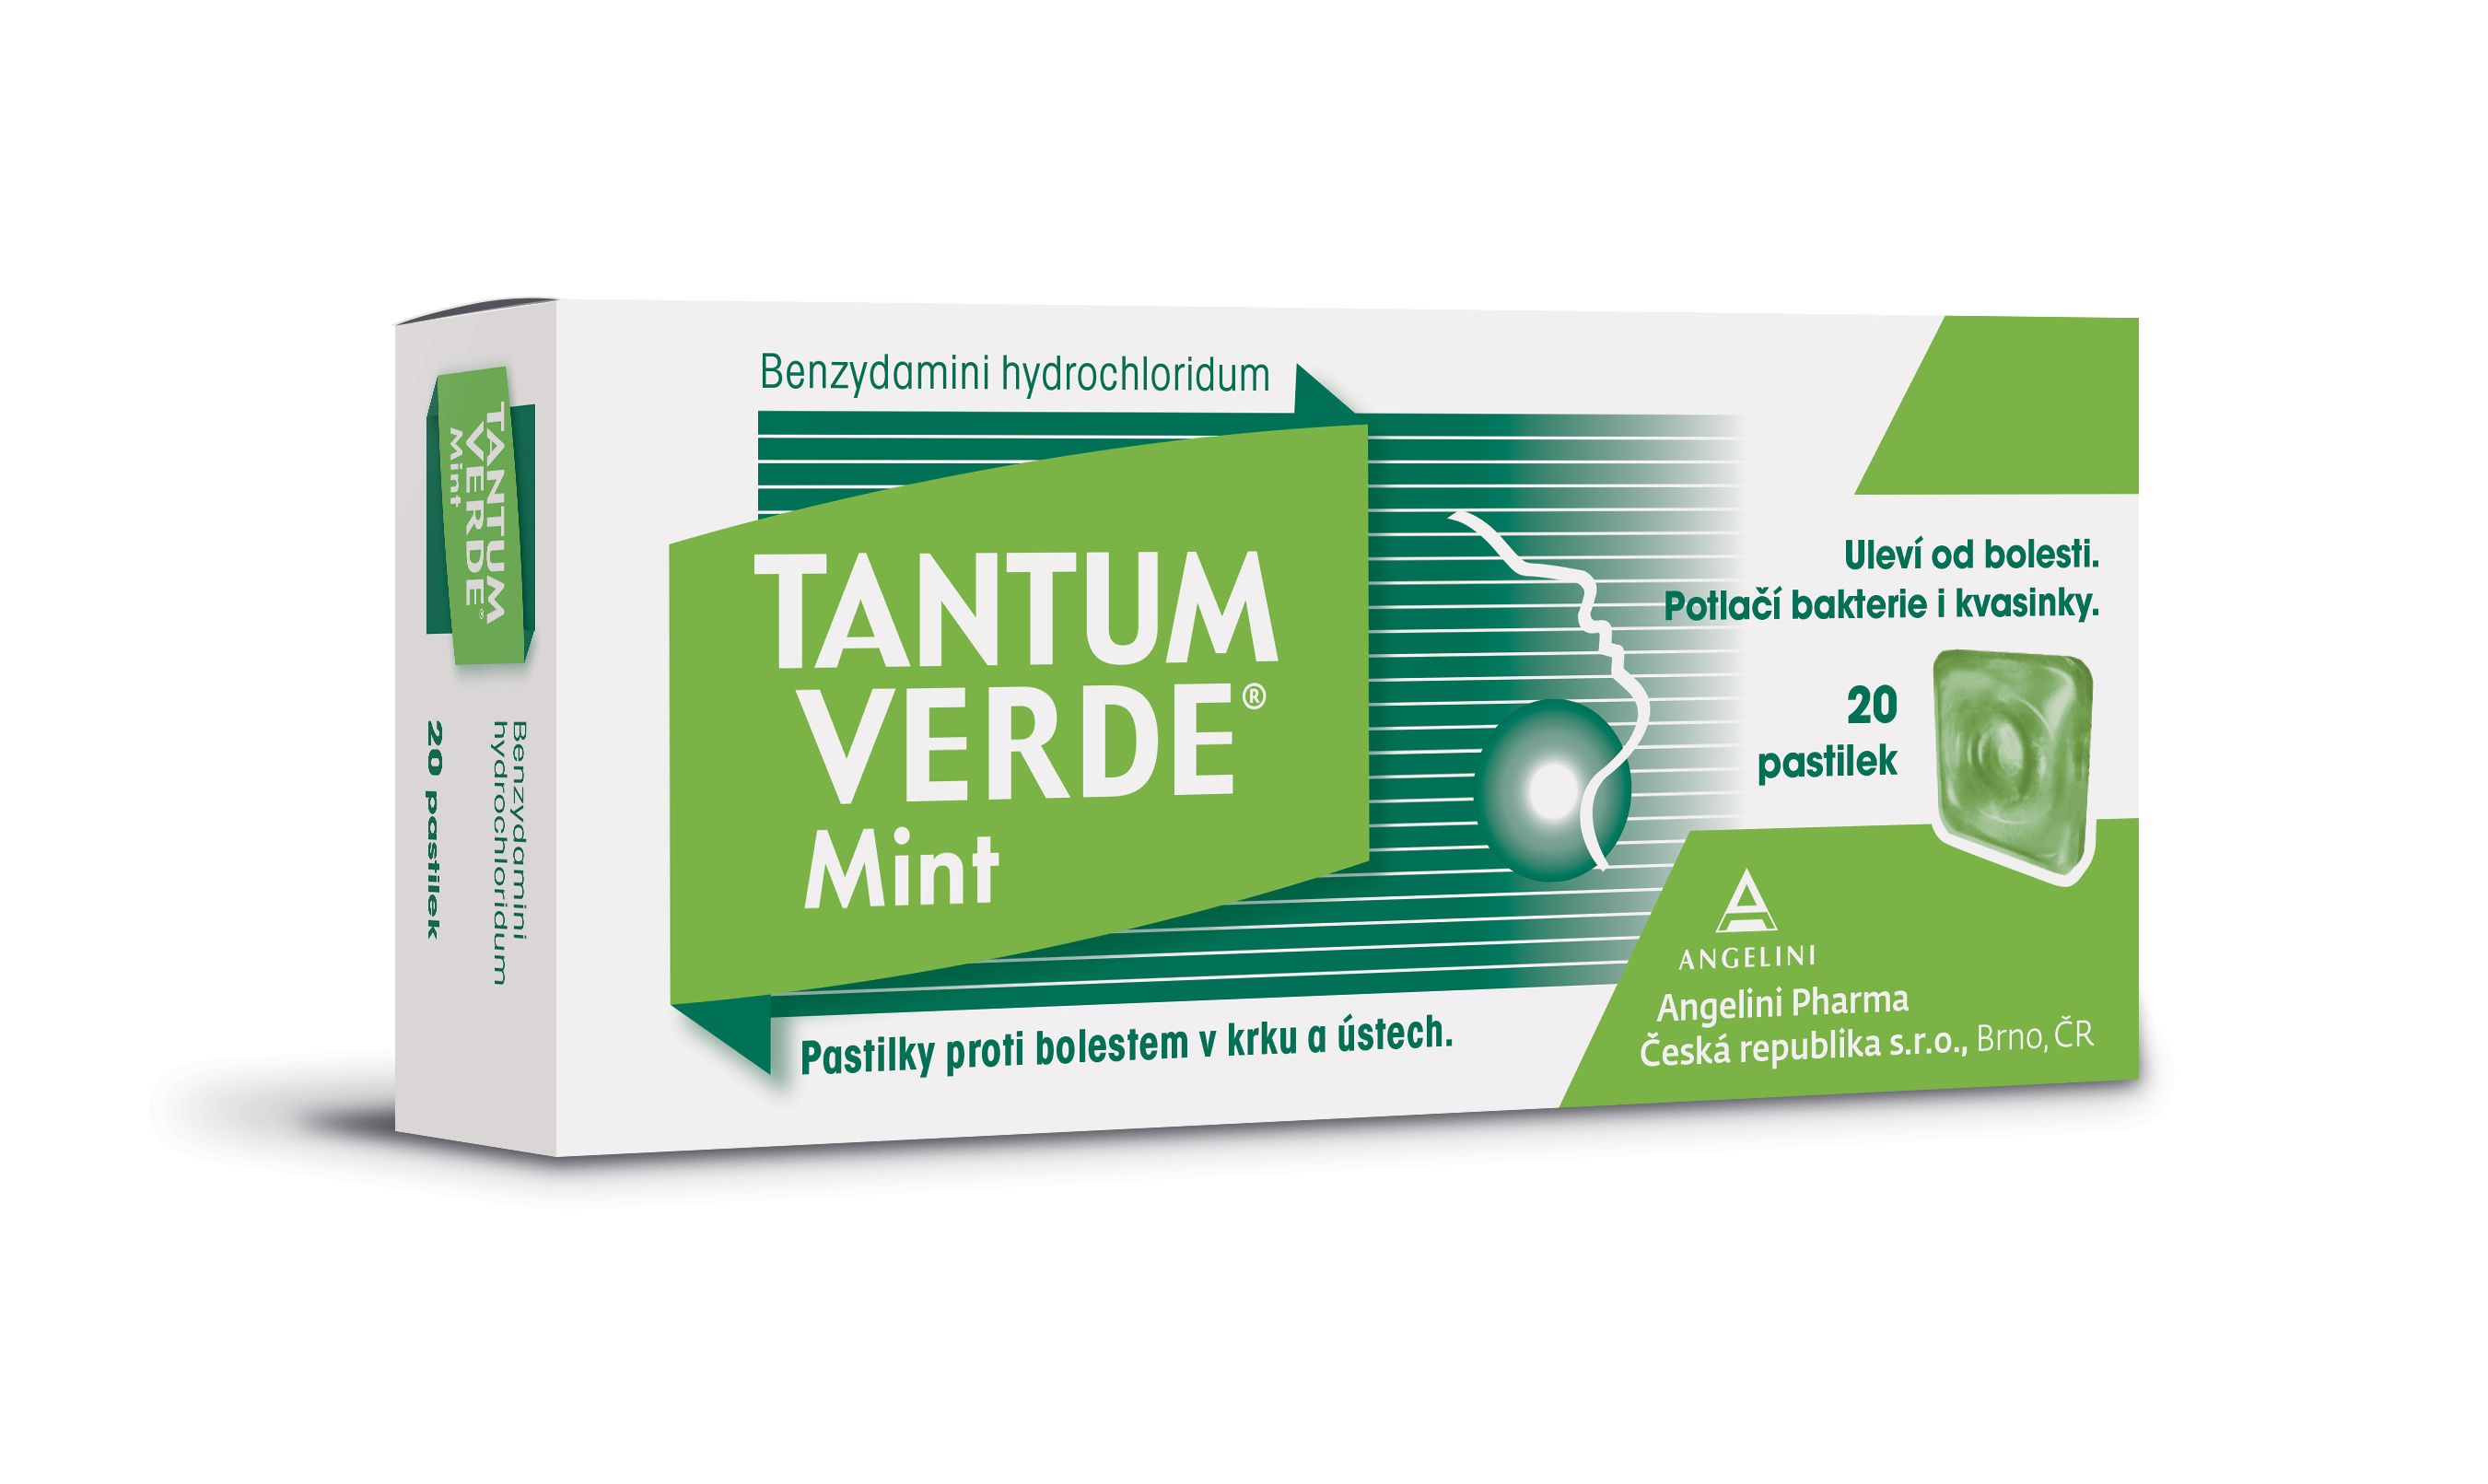 Tantum verde Mint 3 mg 20 pastilek Tantum verde